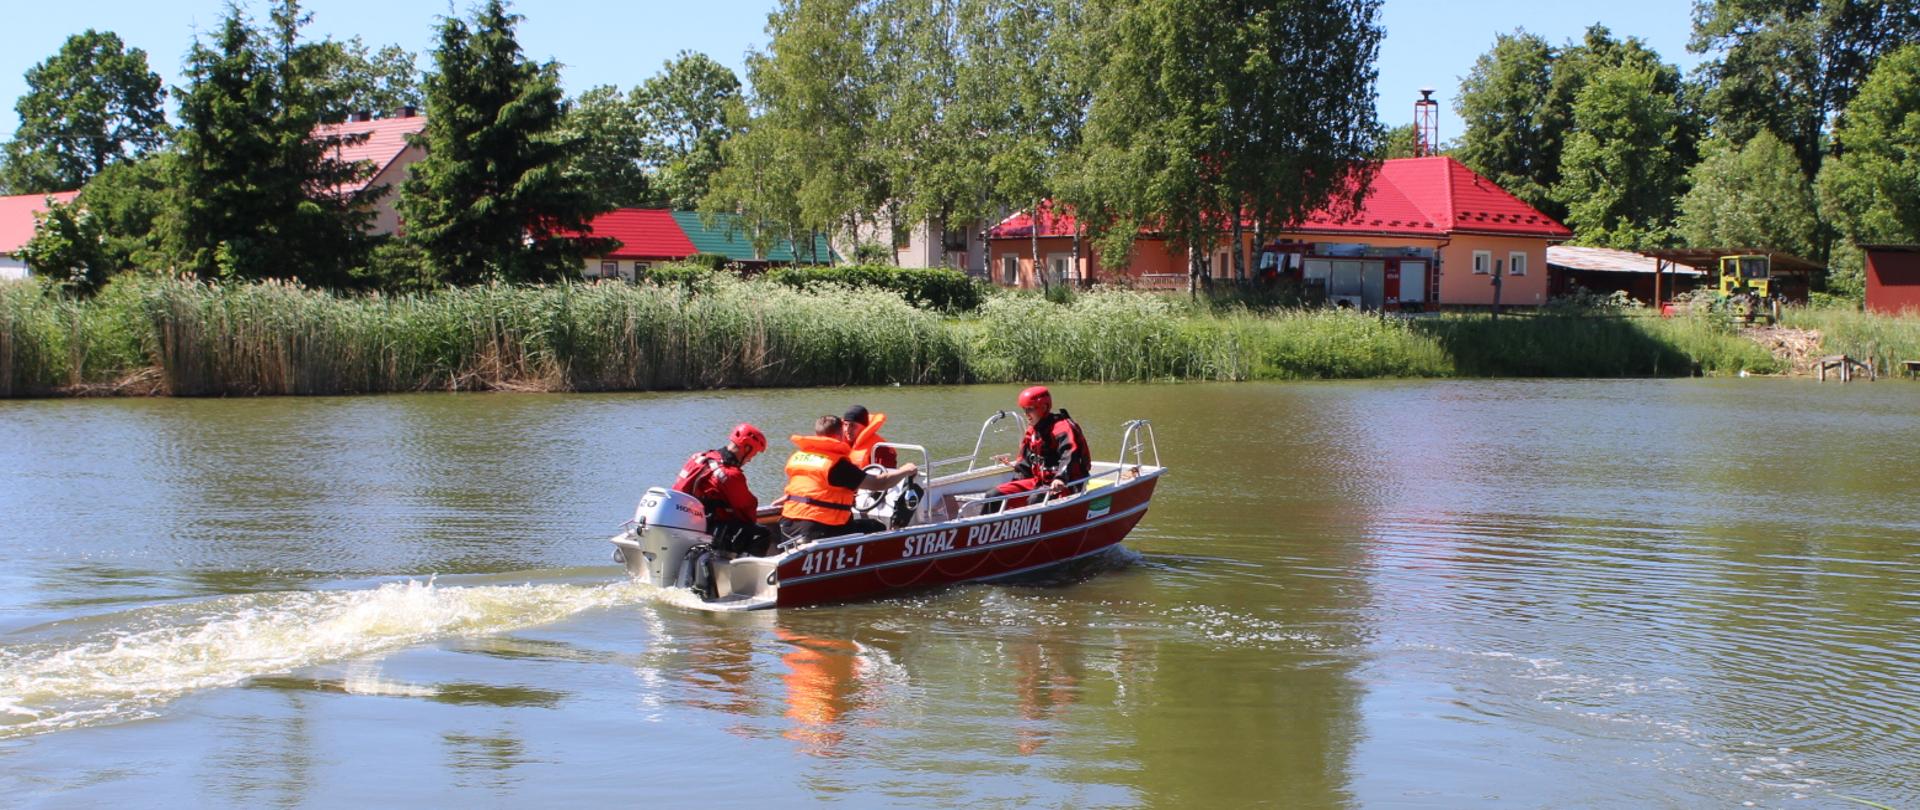 ratownicy podczas poruszania się łodzią ratunkową po zbiorniku wodnym 